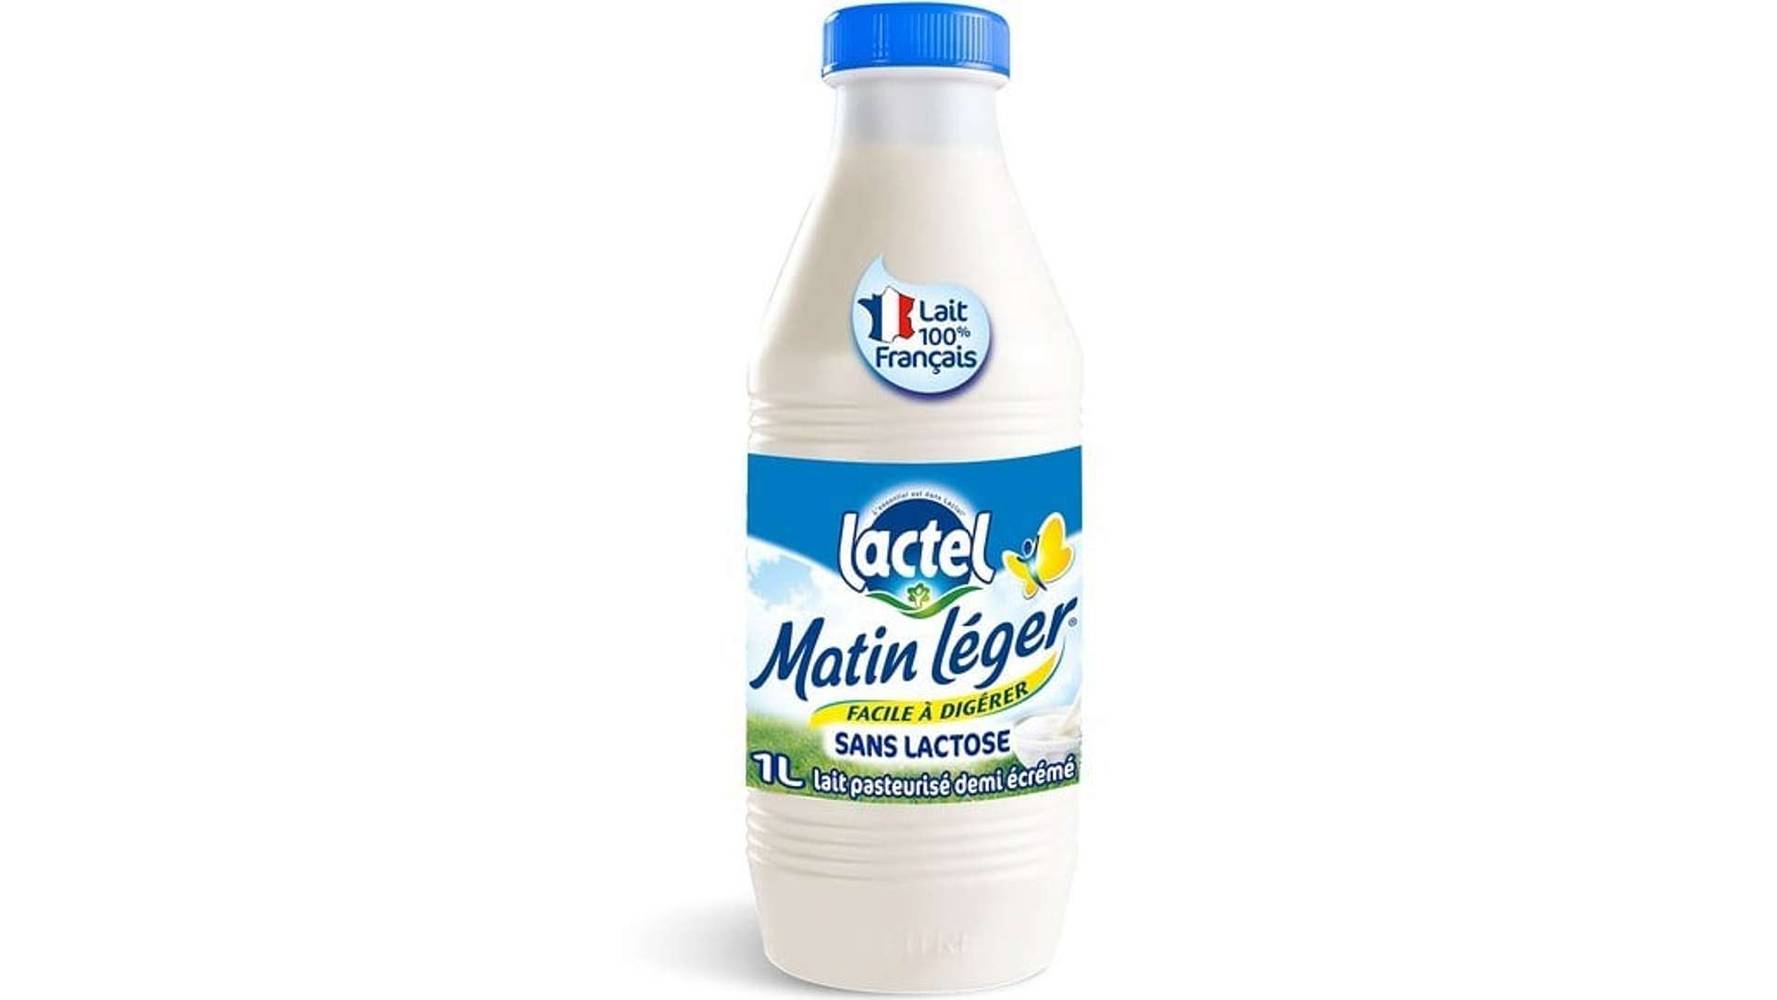 Lactel - Matin léger lait frais demi-écrémé pasteurisé sans lactose (1 L)